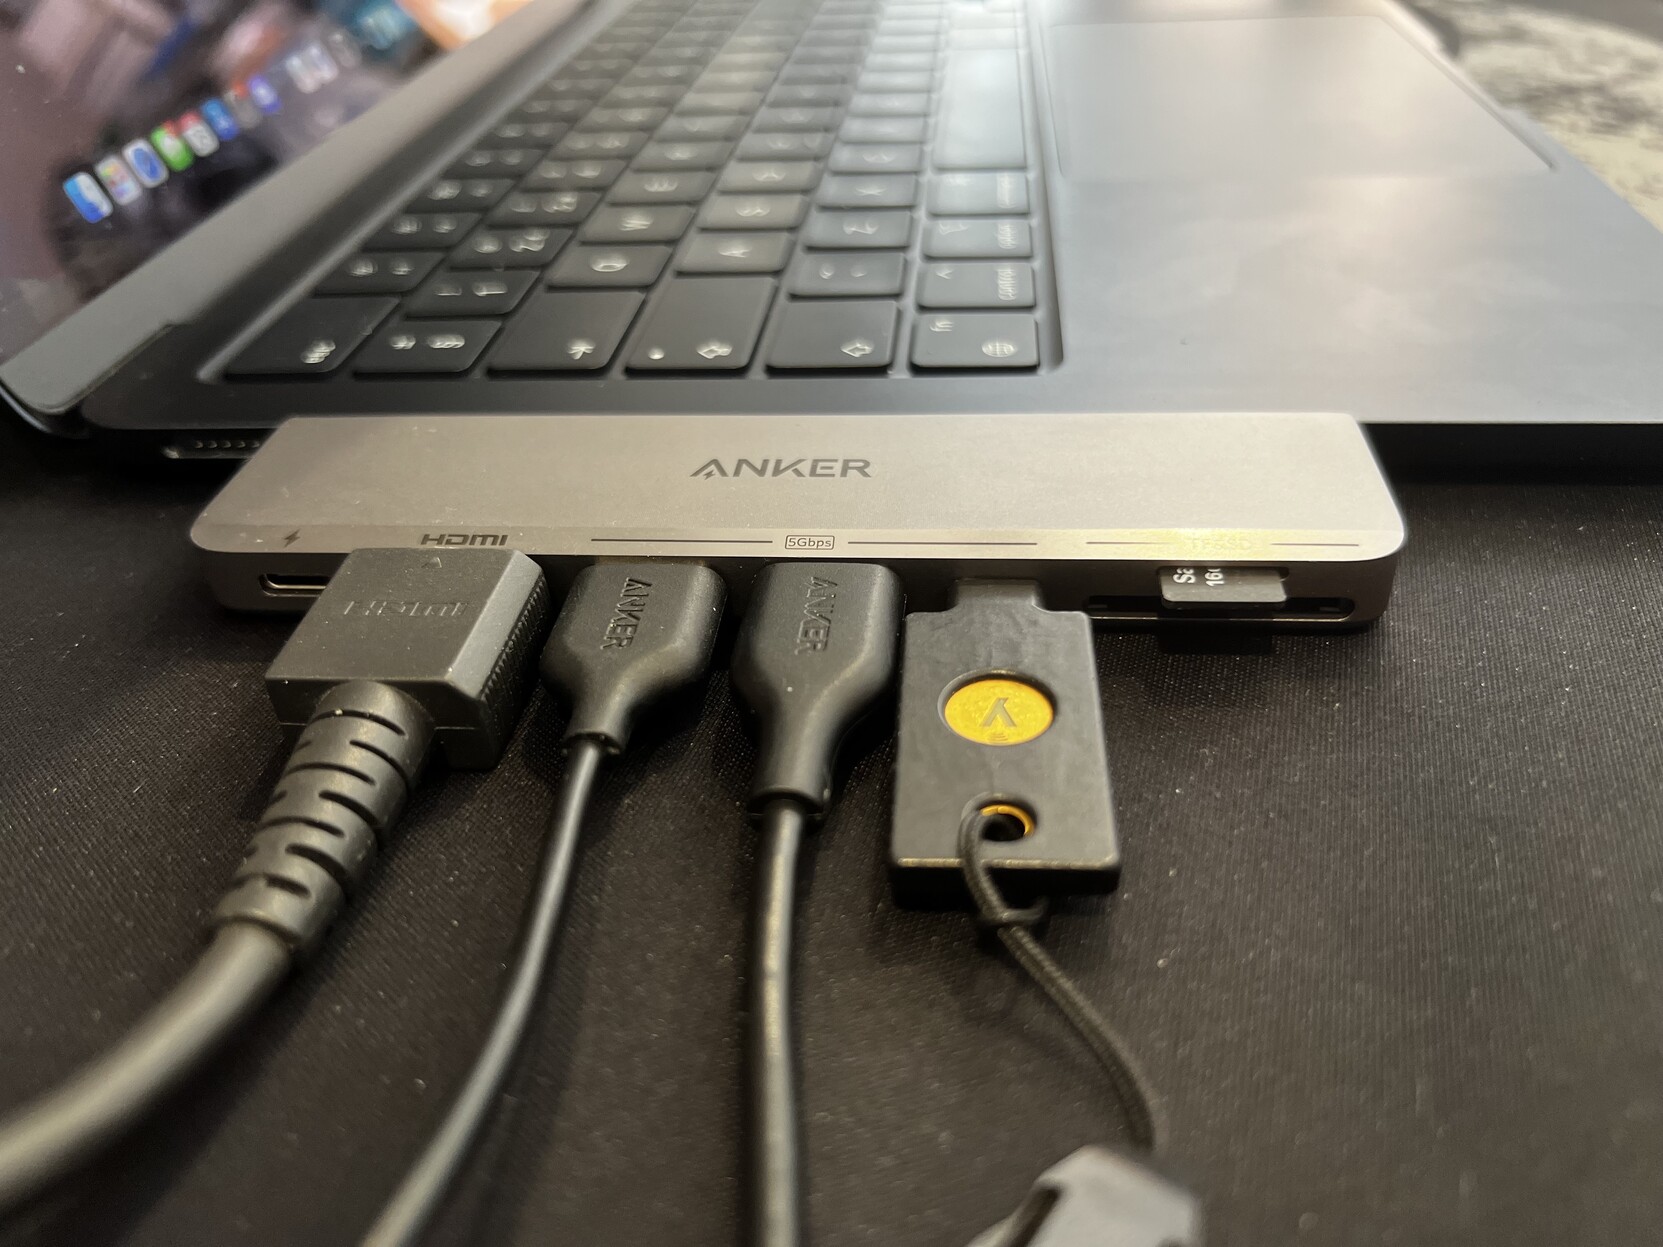 Anker 547 7-in-2 USB-C Hub For MacBook Reviewed - Gadgetoid Gadgetoid